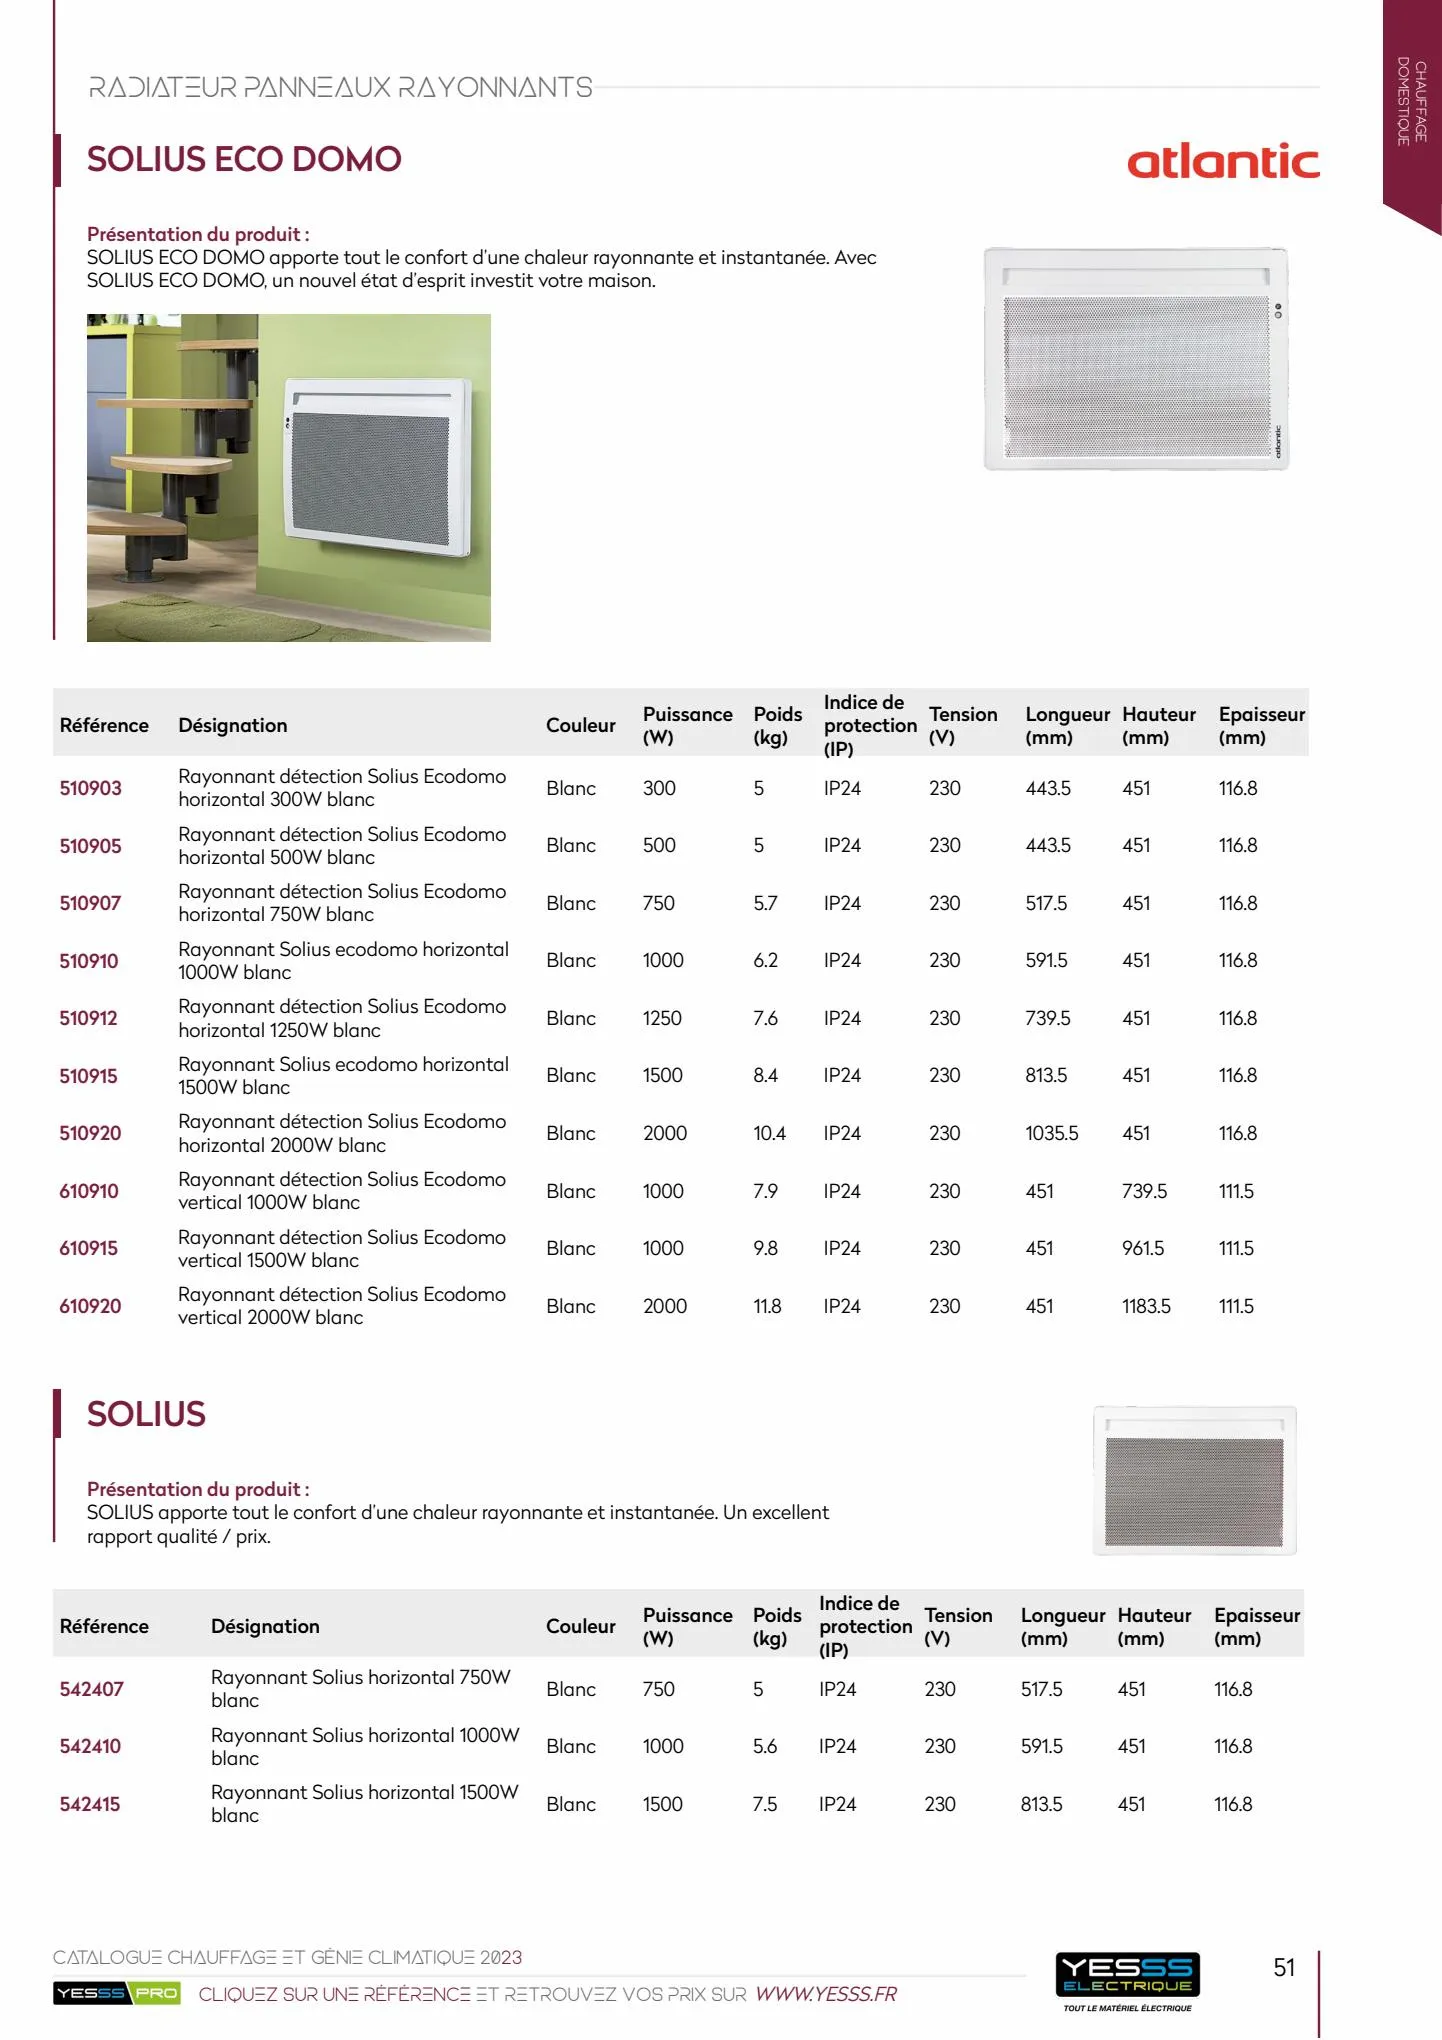 Catalogue Catalogue chauffage et génie climatique, page 00052